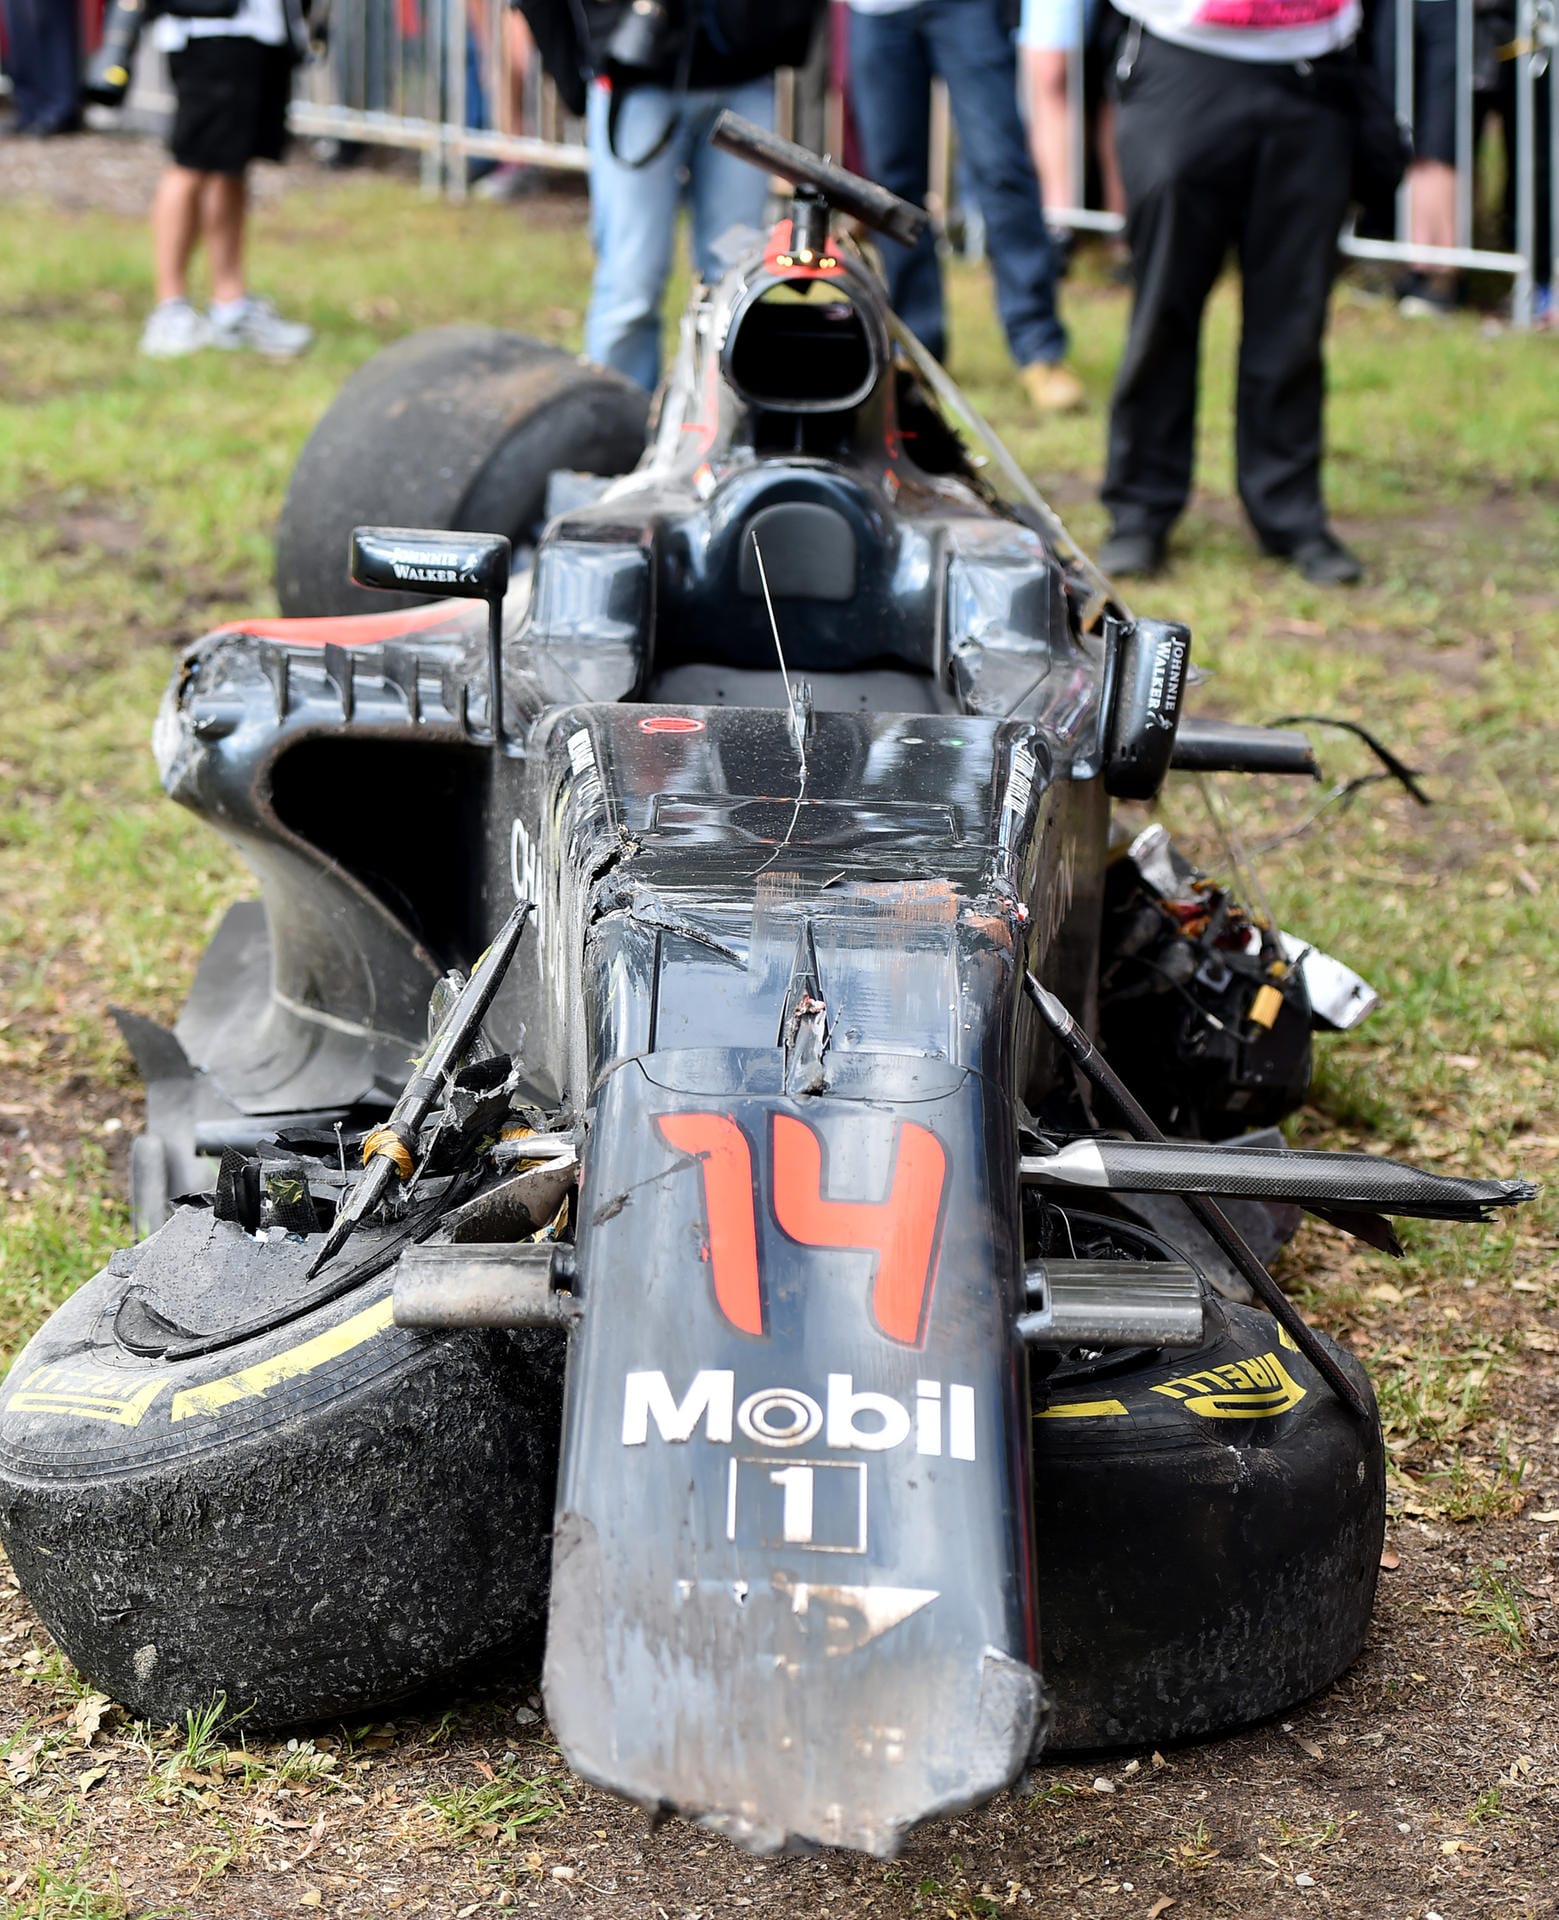 Nur noch das Chassis ist von Alonsos Auto zu sehen. Zum Glück sind die Formel-1-Autos heutzutage sehr sicher. Vor 20 Jahren hätte der Spanier den Crash wohl nicht überlebt.